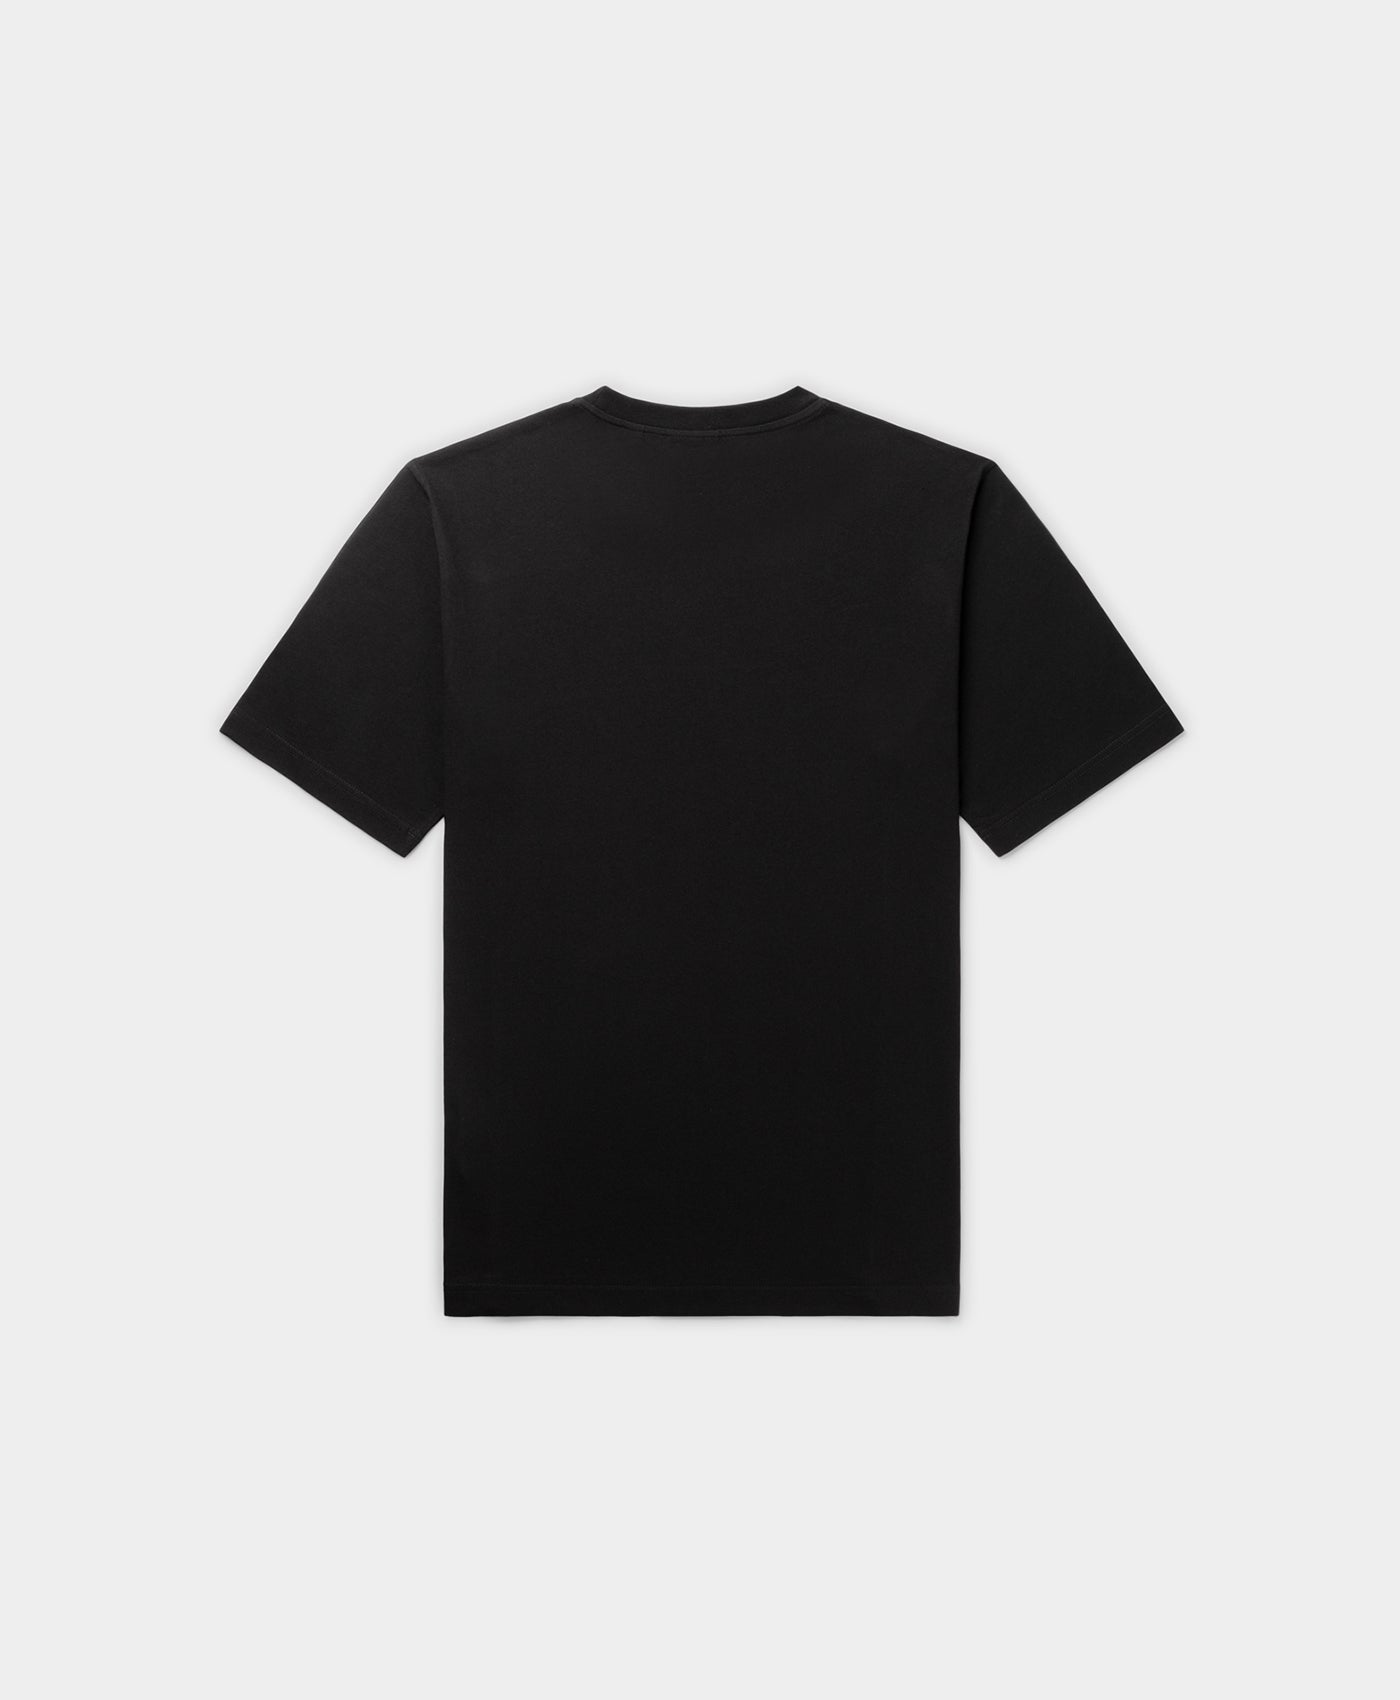 DP - Black Panit T-Shirt - Packshot - Rear